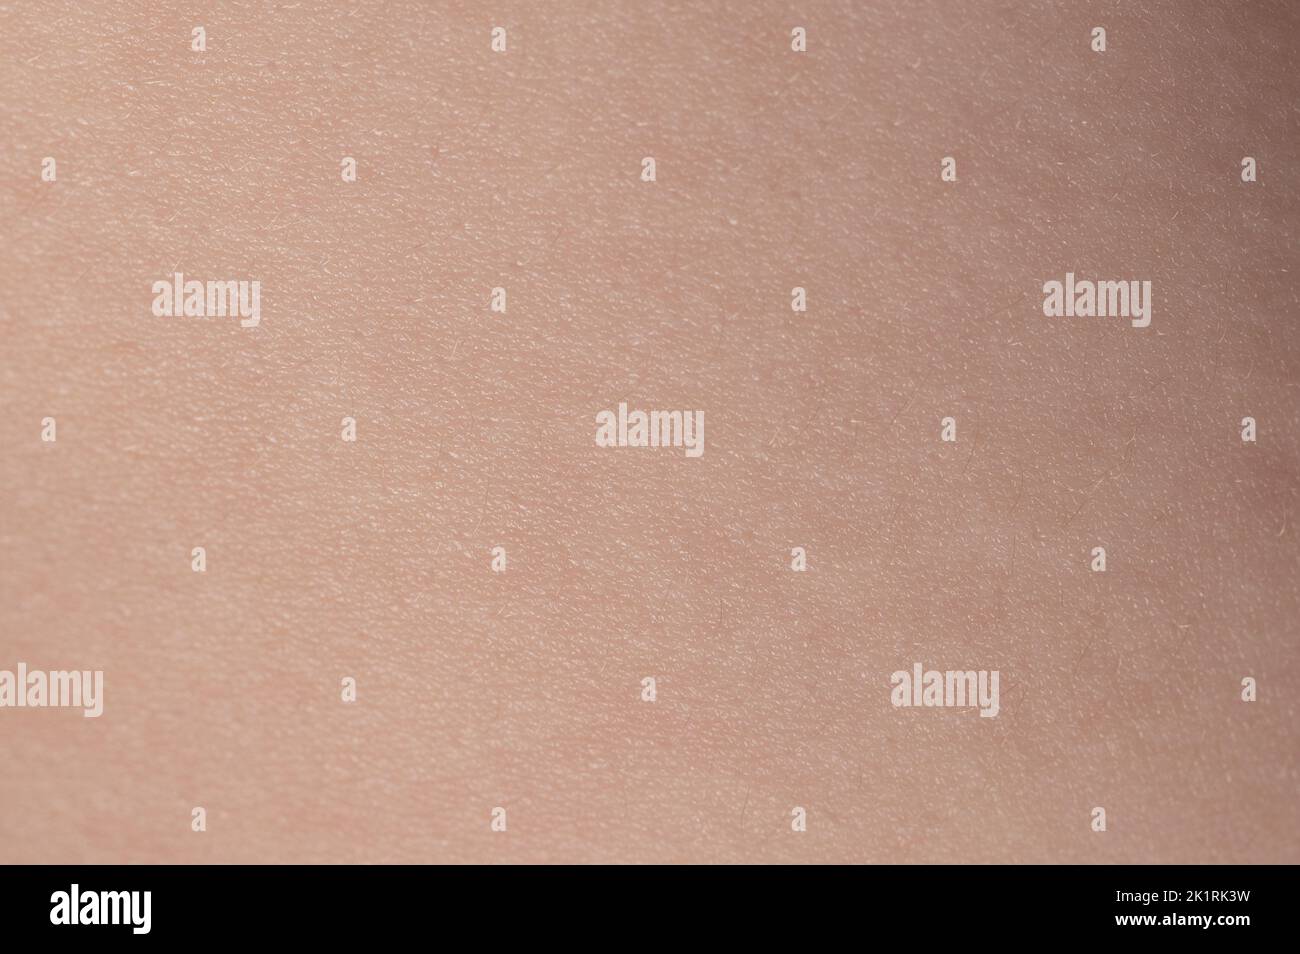 Superficie de piel limpia beige macro vista de primer plano Foto de stock